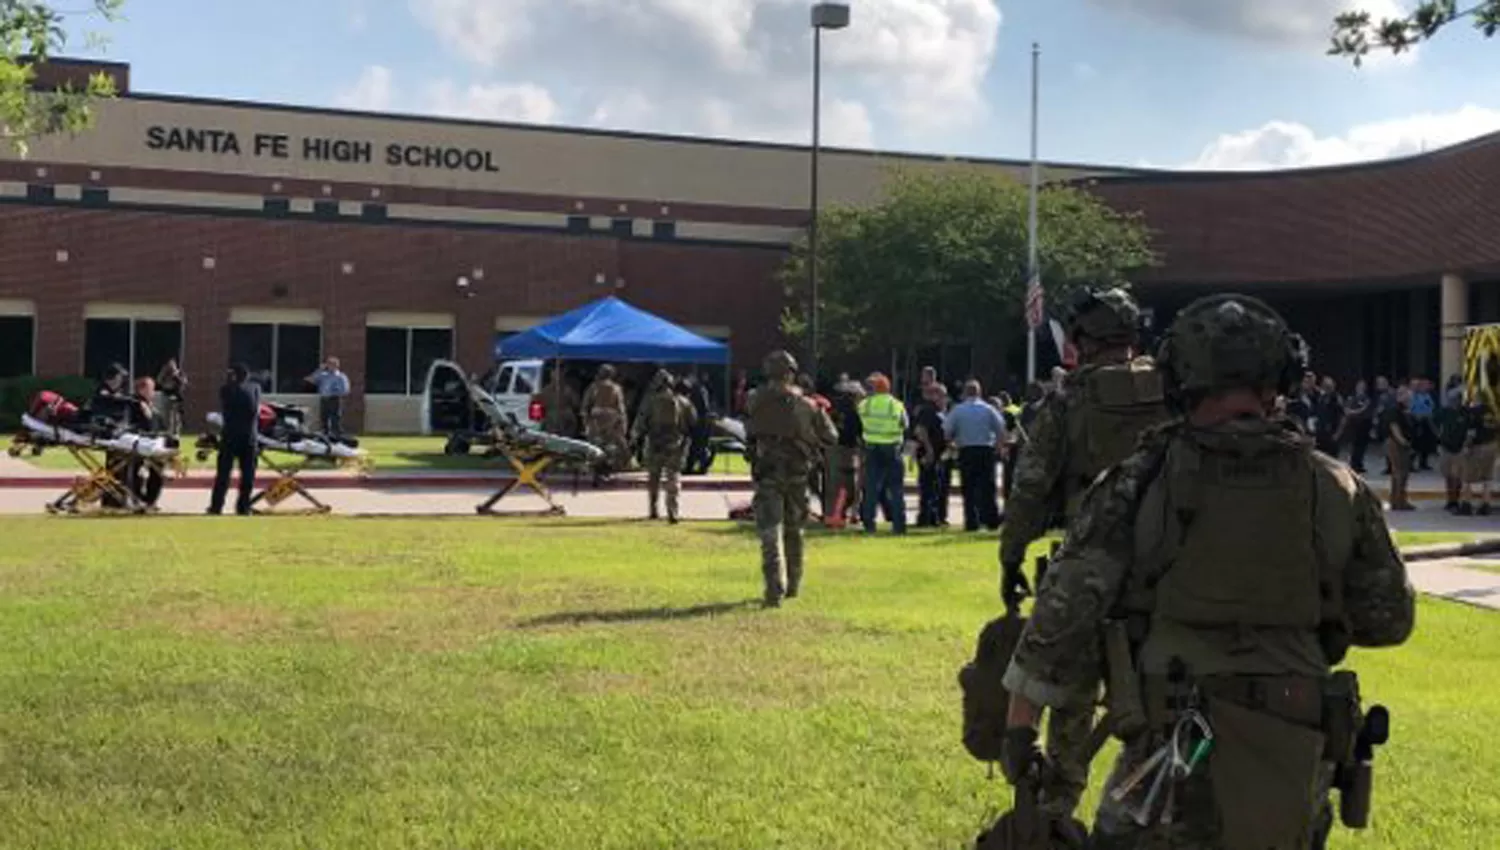 DOLOR. El tiroteo tuvo lugar en una escuela secundaria en el sur de Houston, Texas. (FOTO DE UNIVISIÓN) 